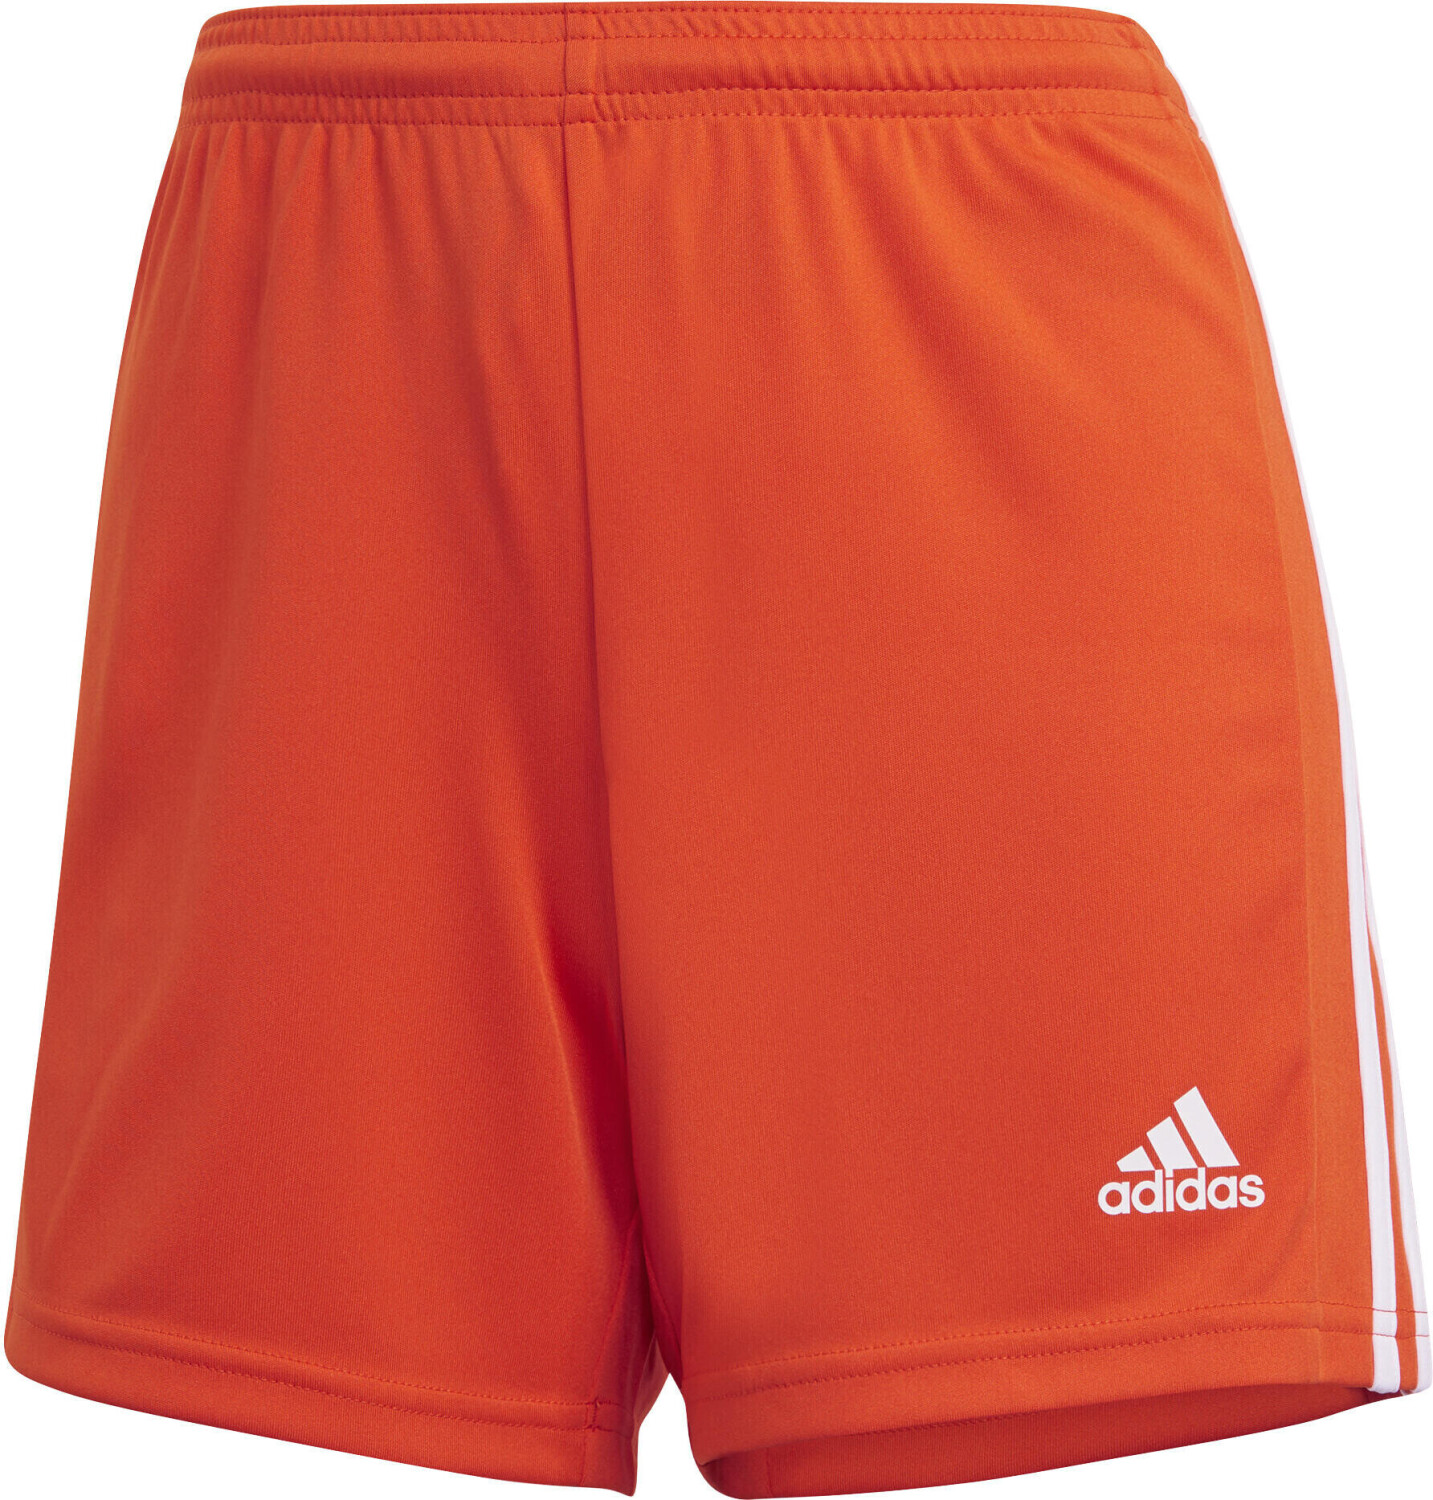 Photos - Football Kit Adidas Women Squadra 21 Shorts teaora/white  (GN8086)